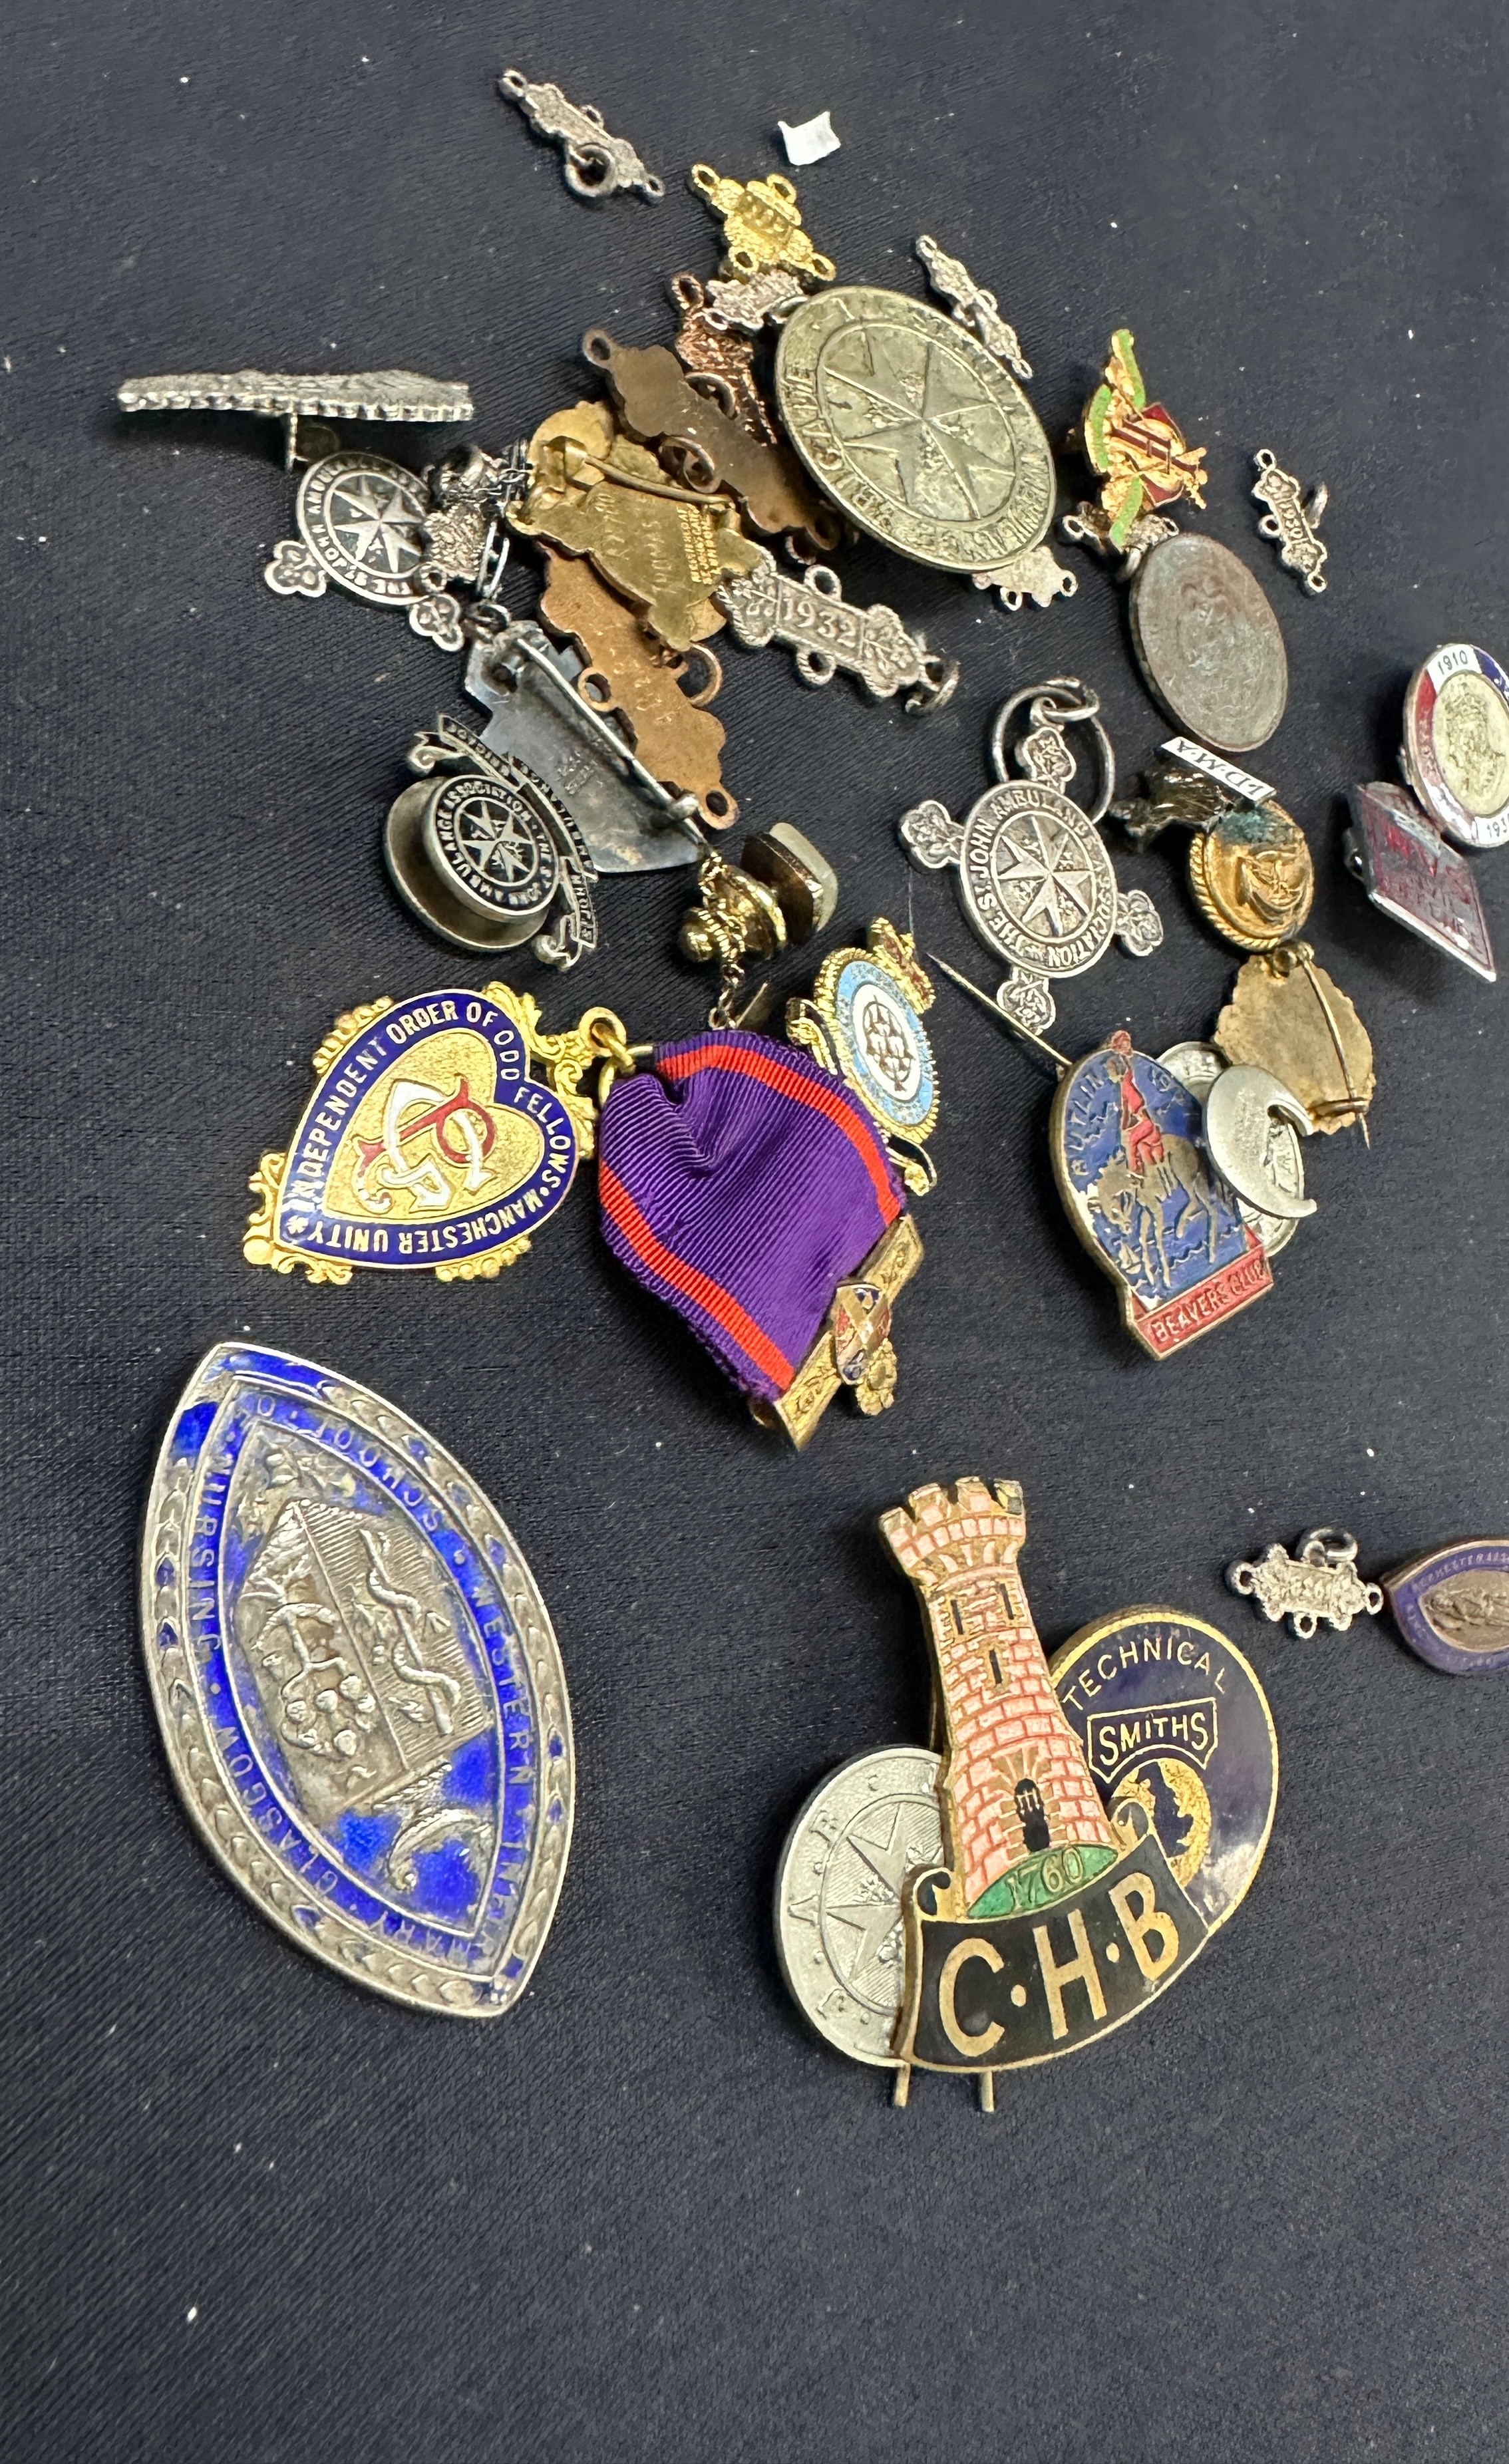 Vintage badges / medals, some silver - Image 2 of 3